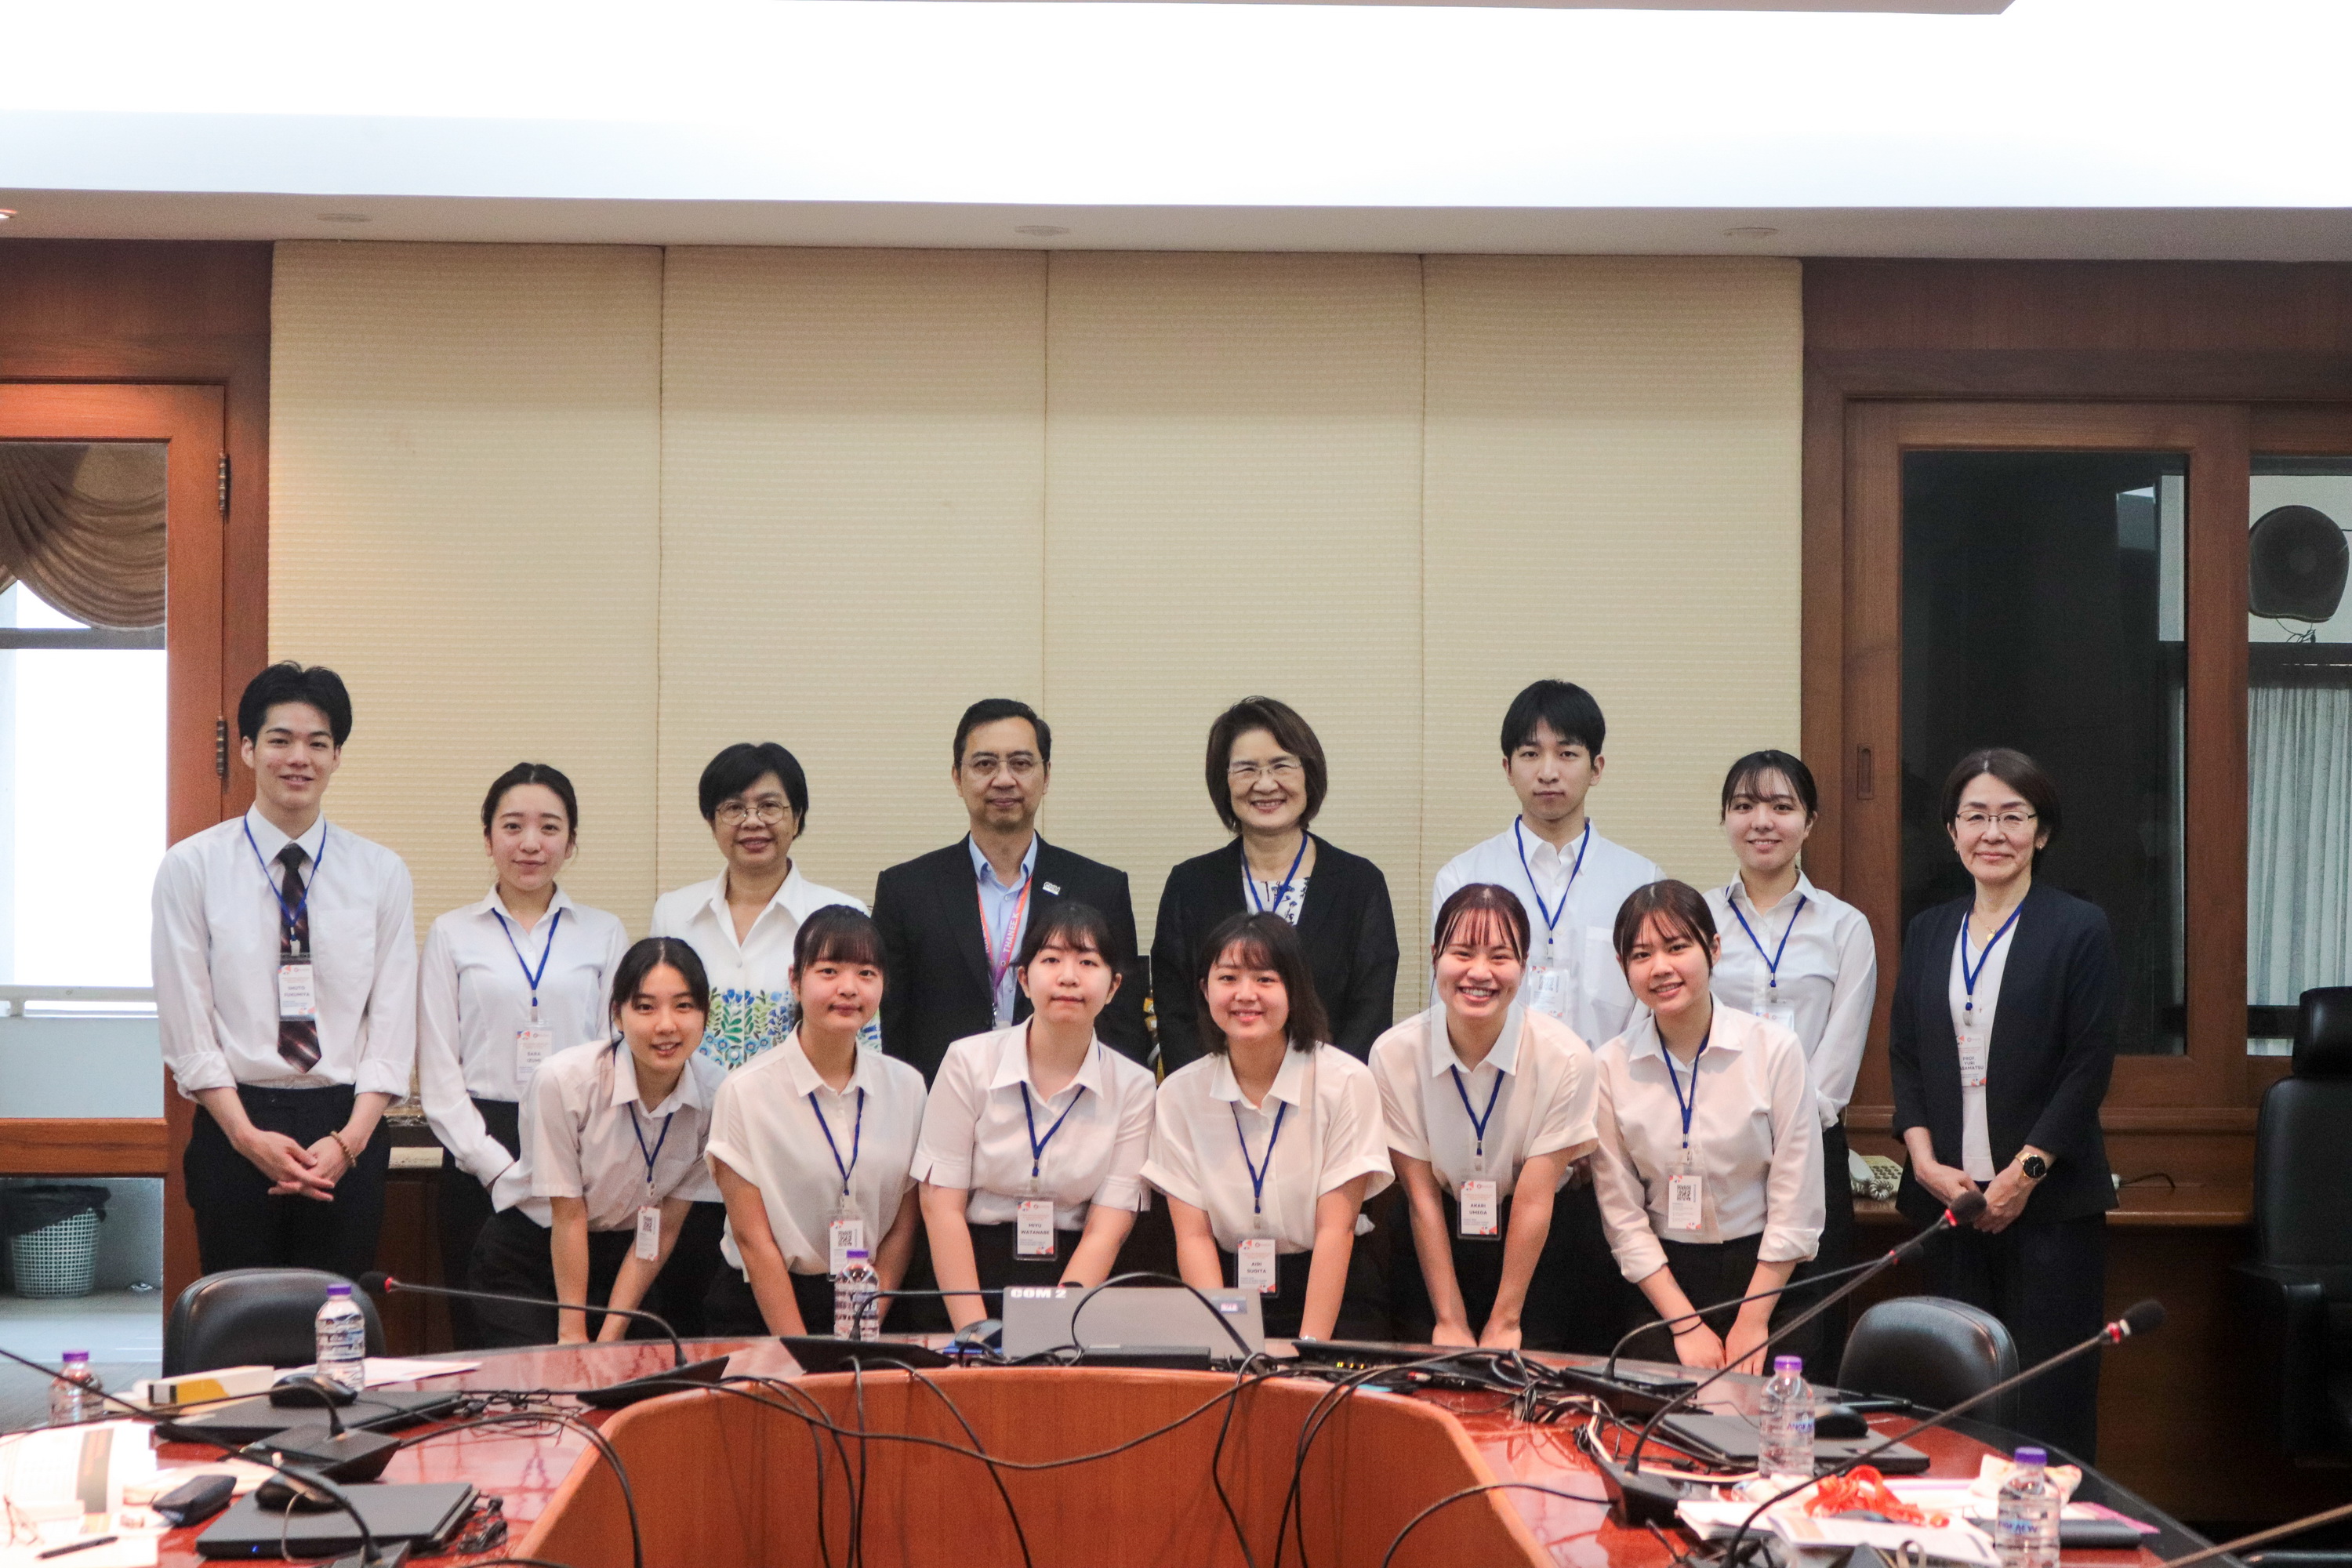 
	โครงการแลกเปลี่ยนนักศึกษาระหว่างคณะพยาบาลศาสตร์ กับ Otemae University, Japan
